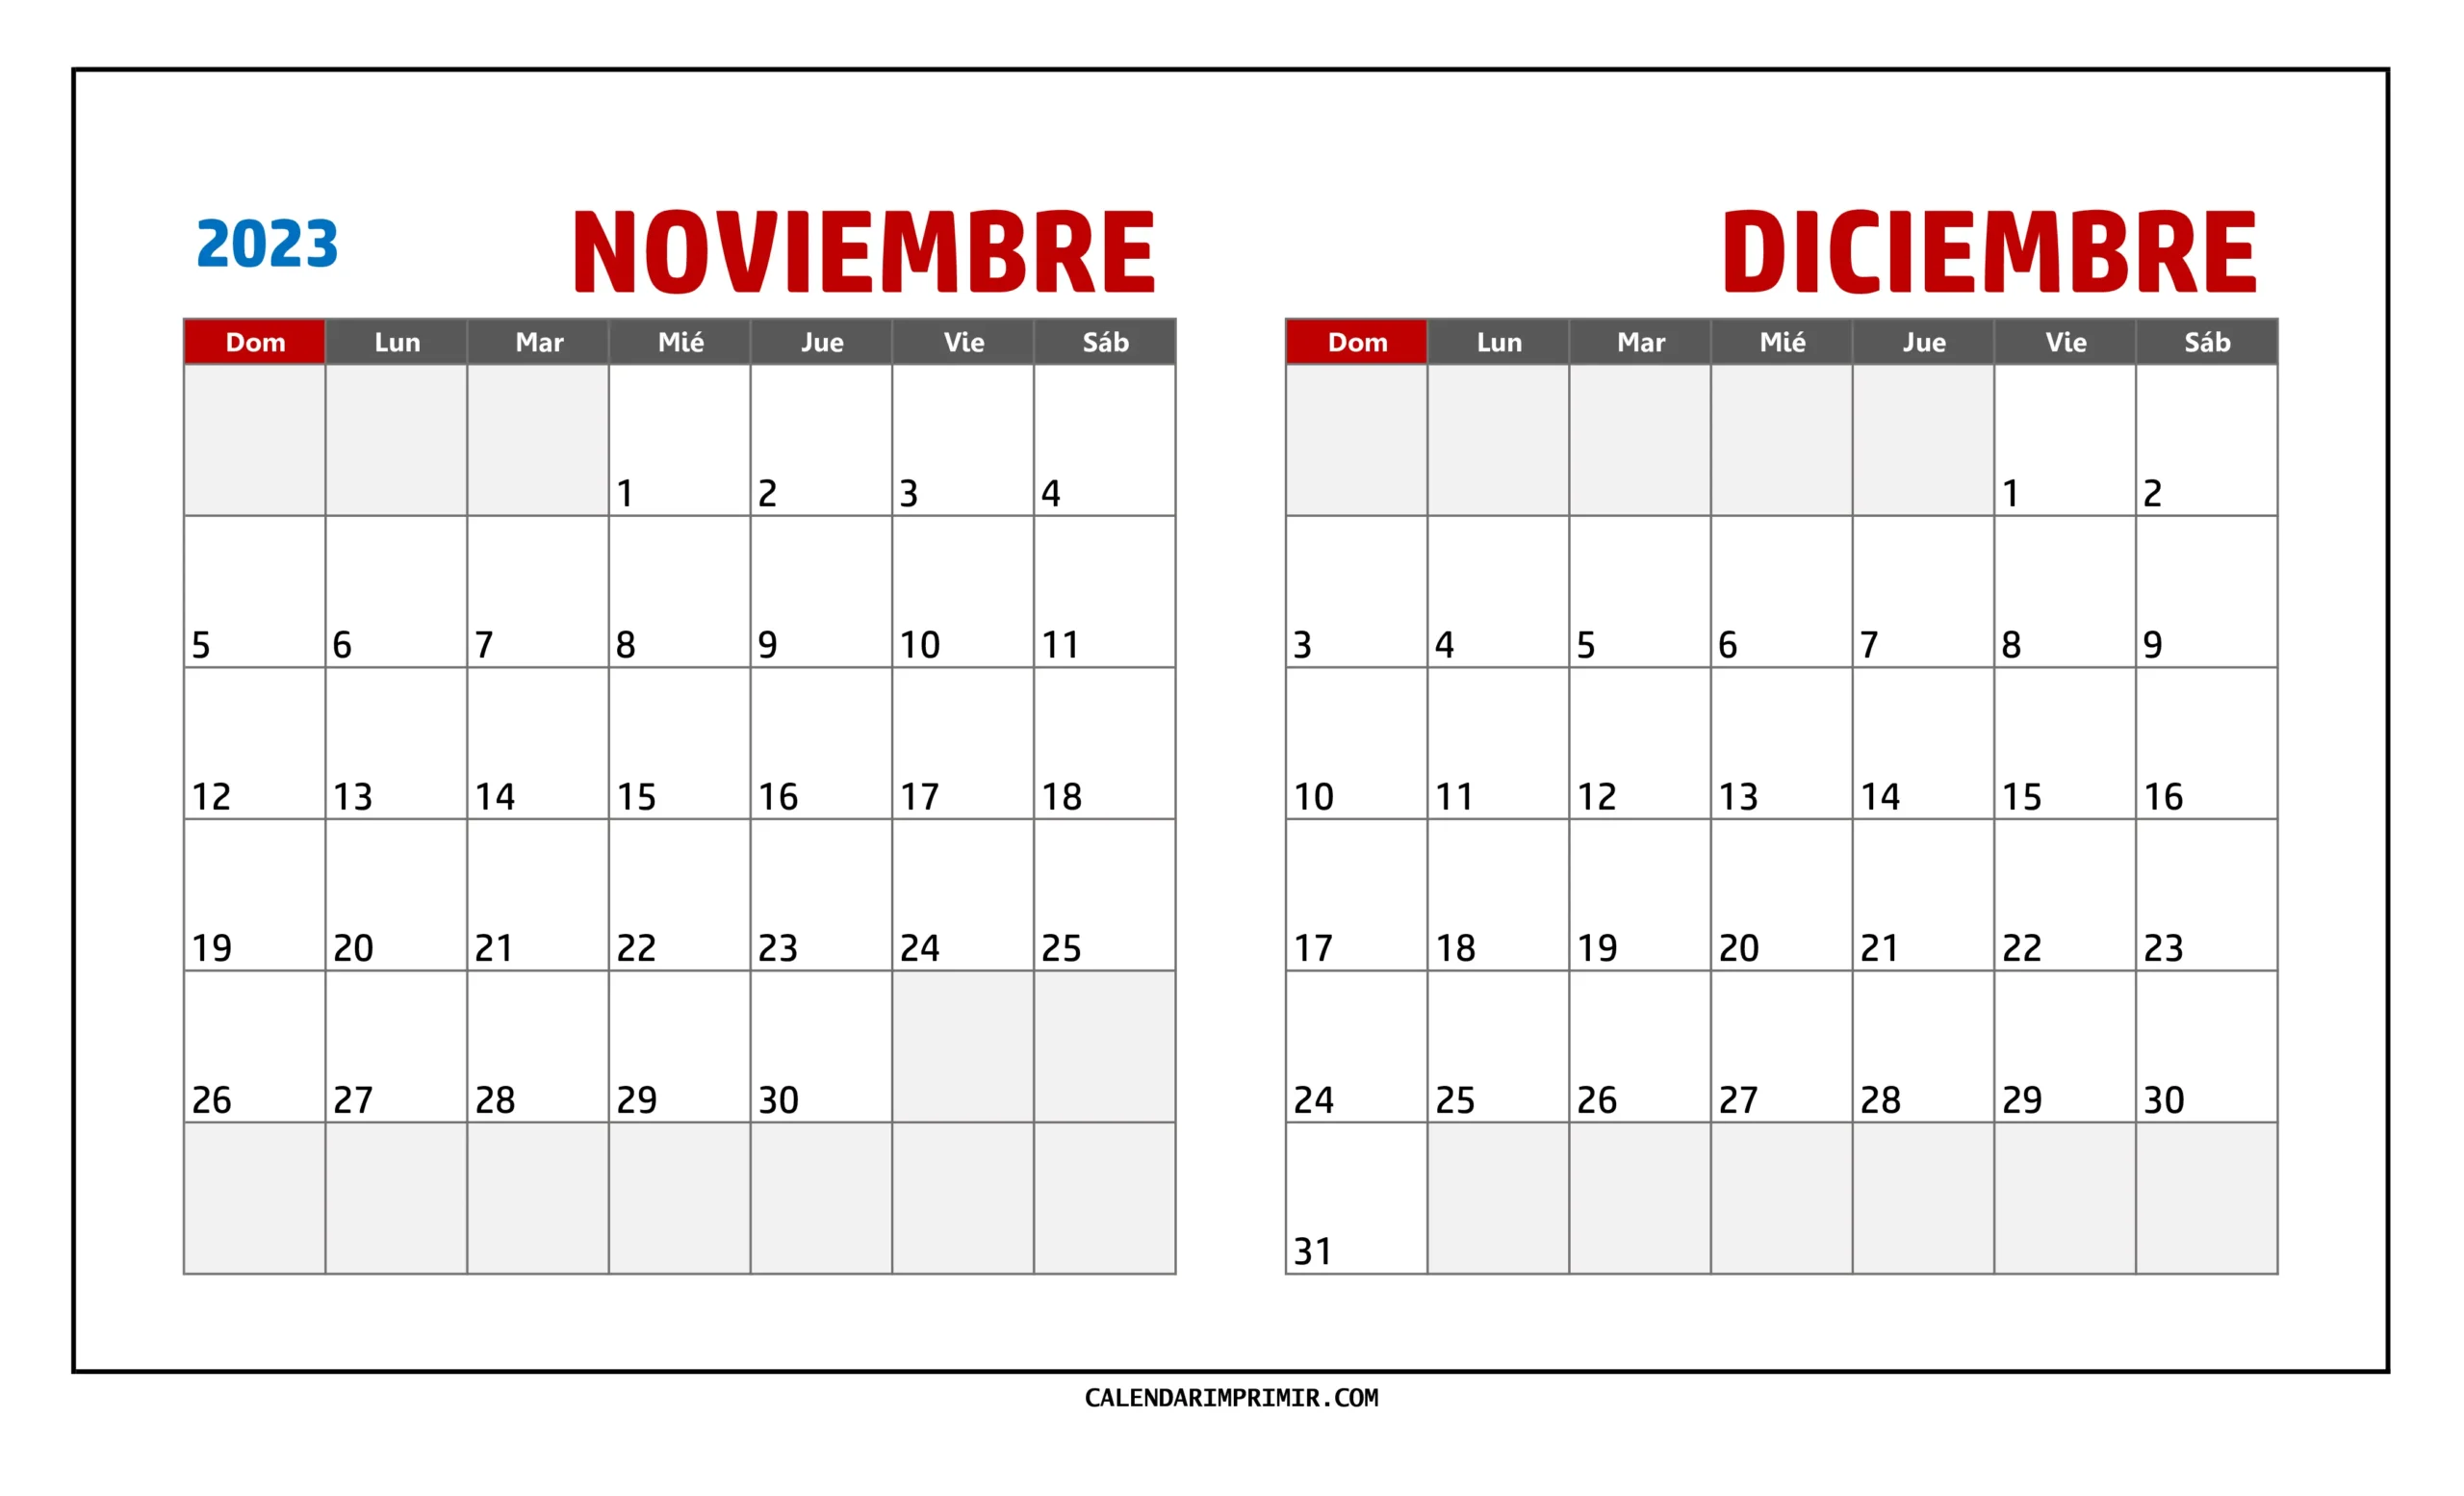 Calendario Noviembre y Diciembre 2023 Para Imprimir, un calendario de dos meses con días y fechas claramente marcados.